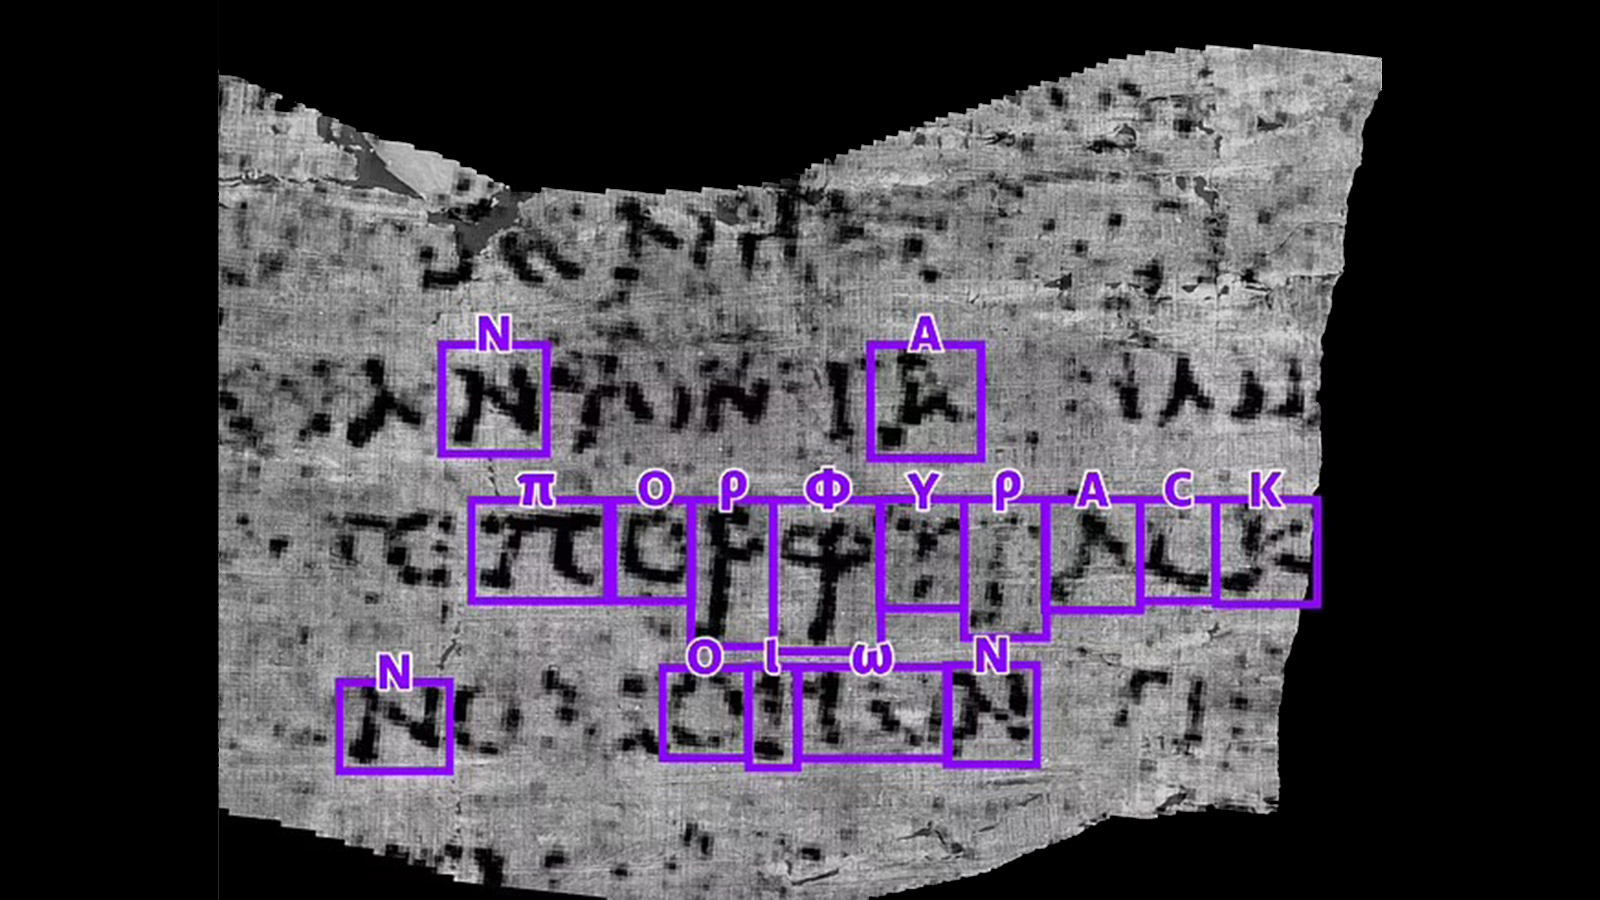 <p>Двое ученых независимо друг от друга обнаружили древнегреческое слово, обозначающее фиолетовый, в рукописях Геркуланума</p>

<p></p>